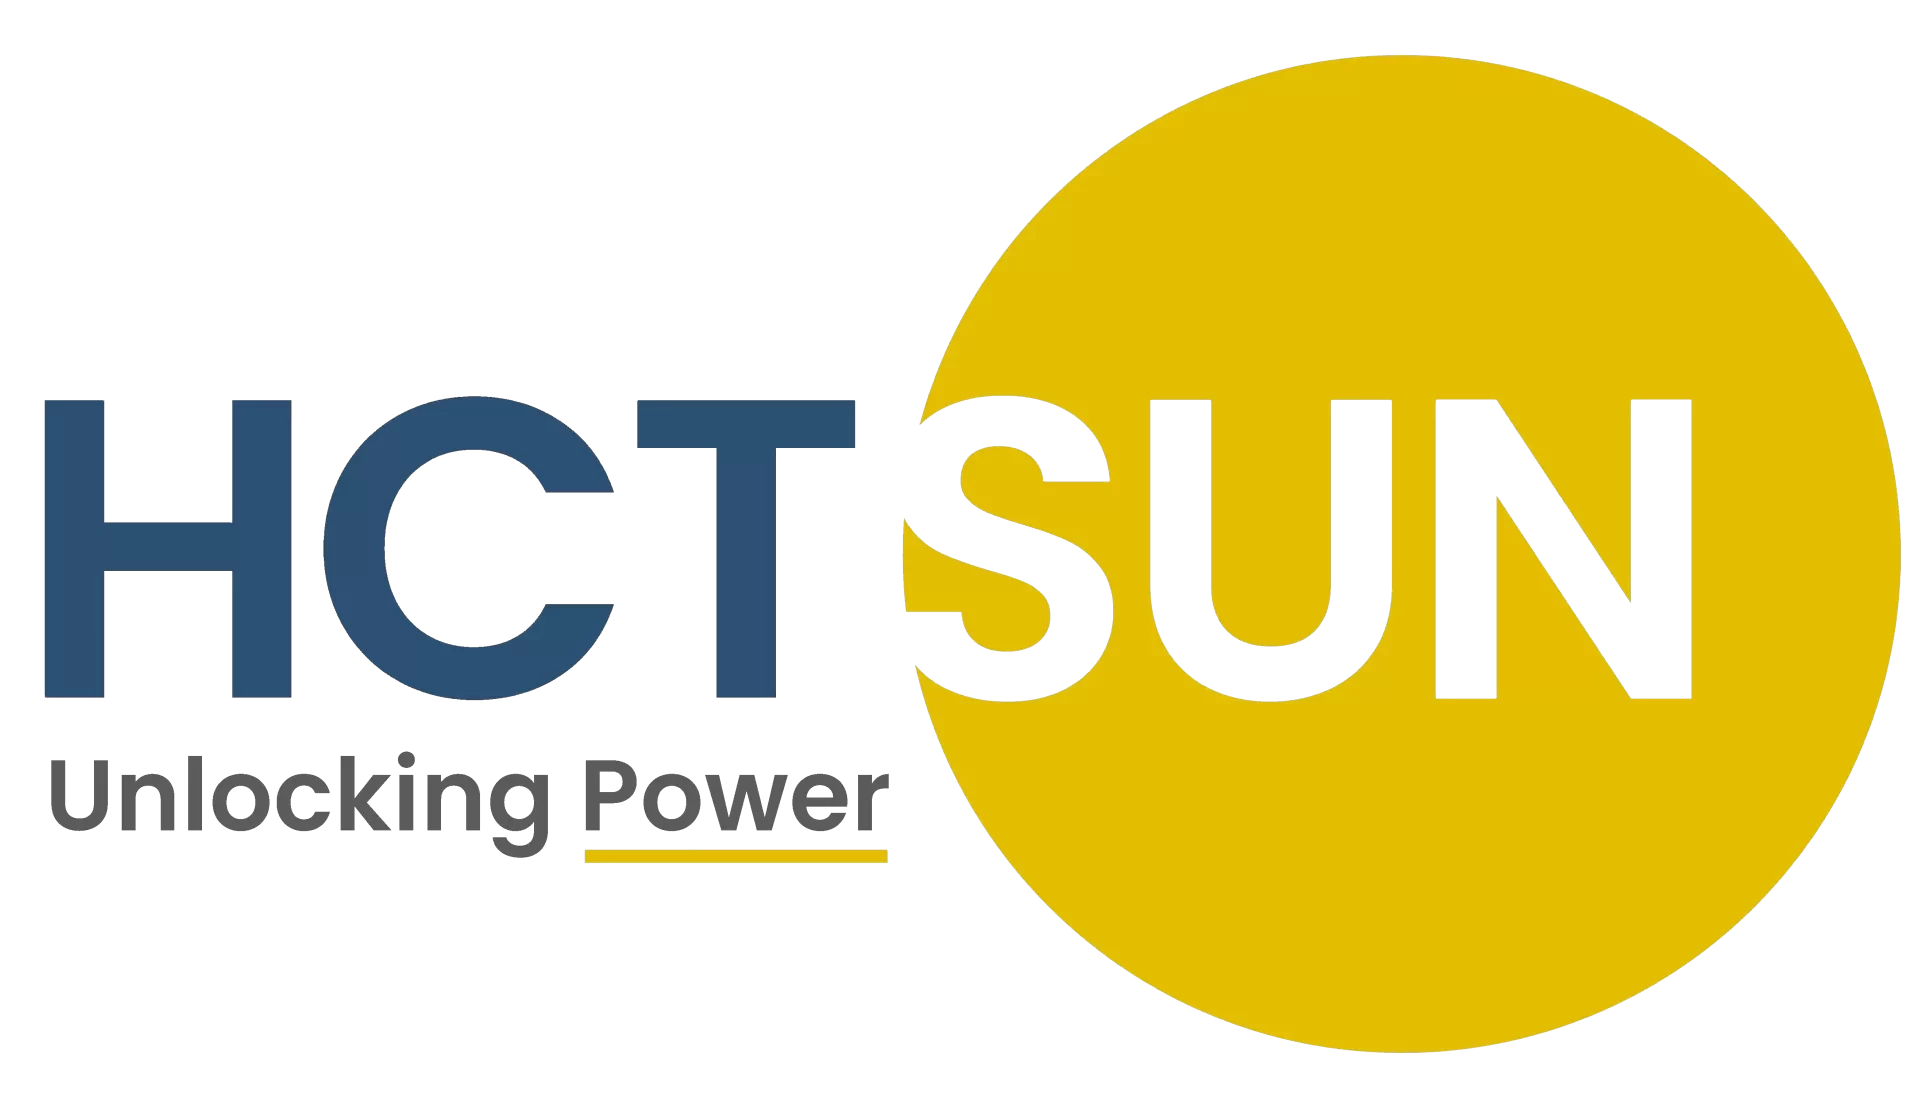 HCT Sun logo